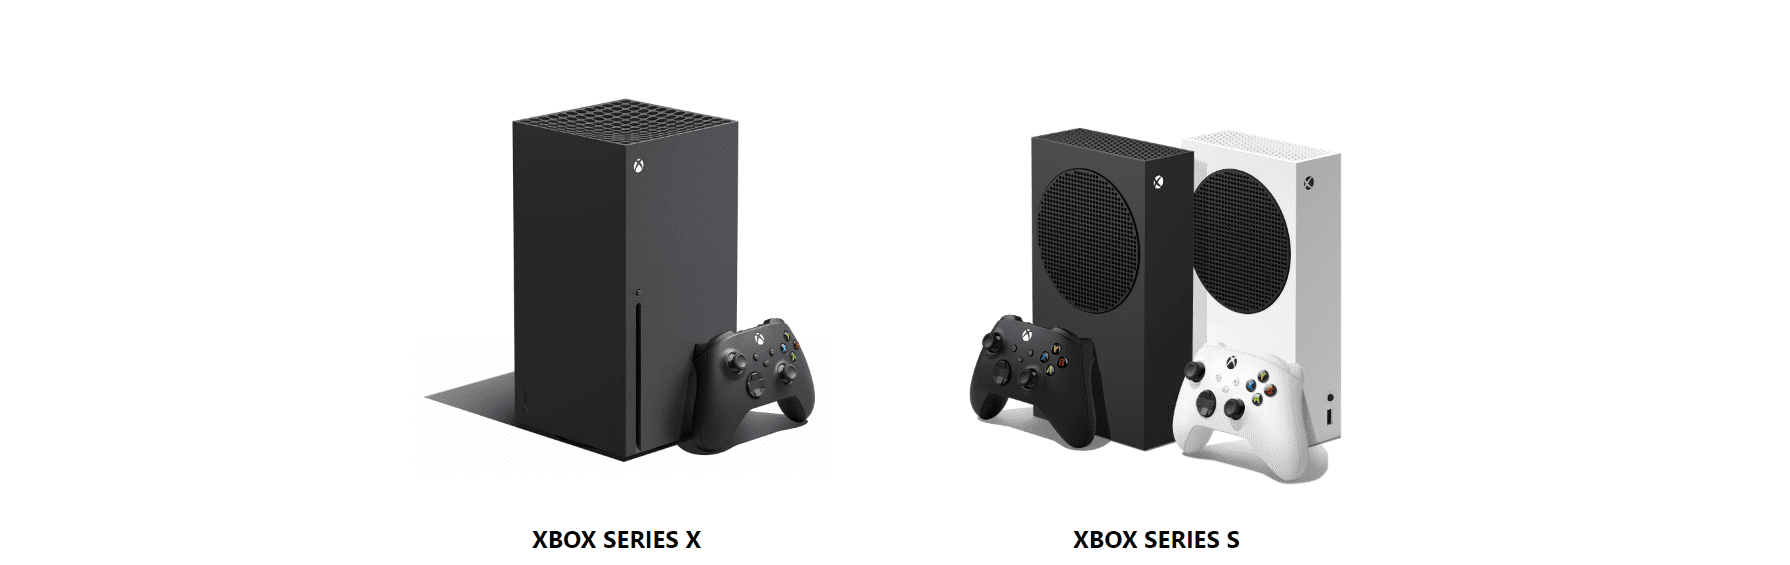 Xbox Series S vs Xbox Series X: Complete Console Comparison - GadgetMates